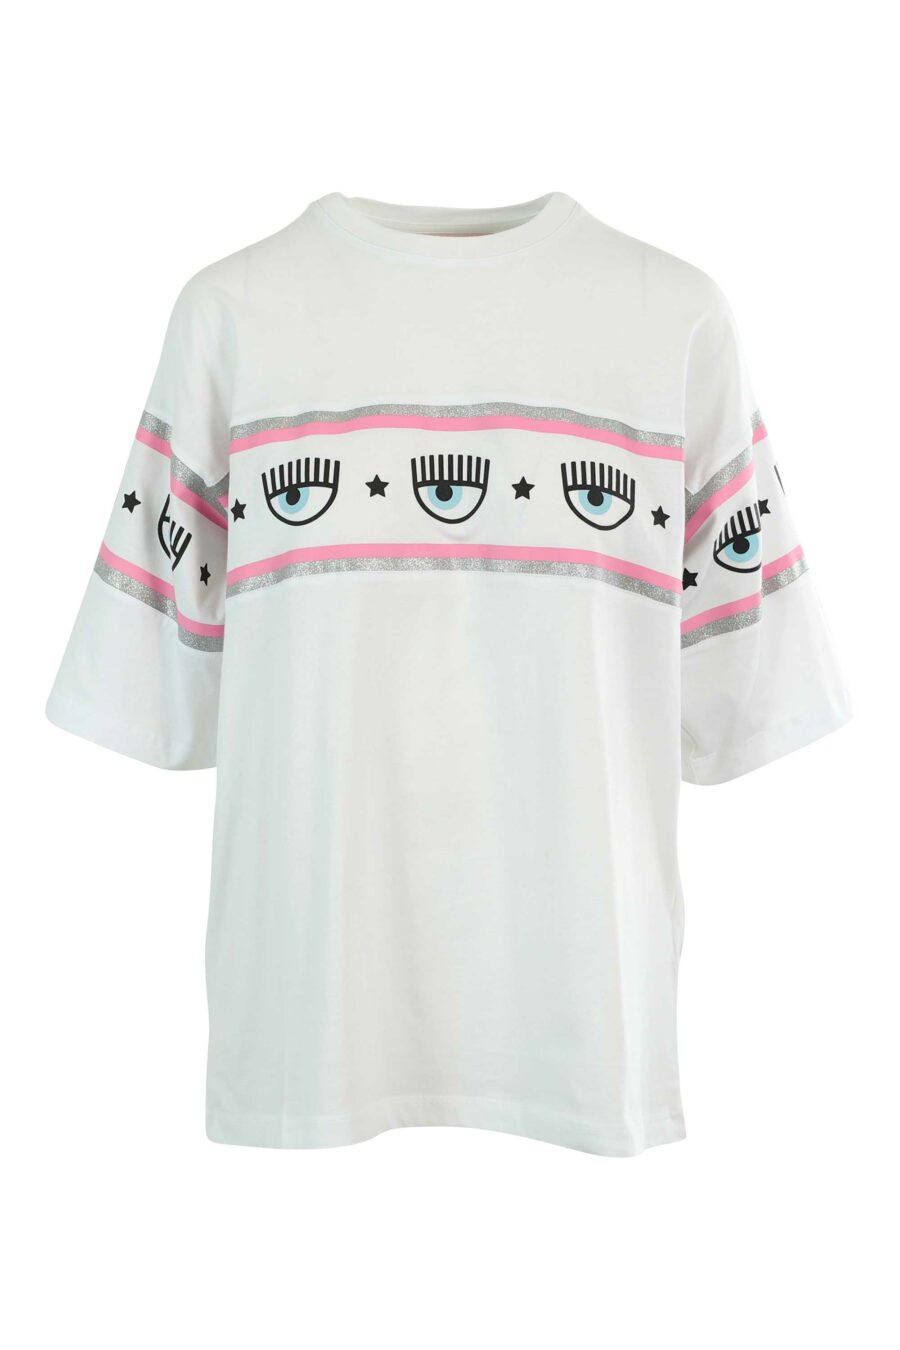 Camiseta blanca manga ancha con logo ojo en cinta - 8052672419330